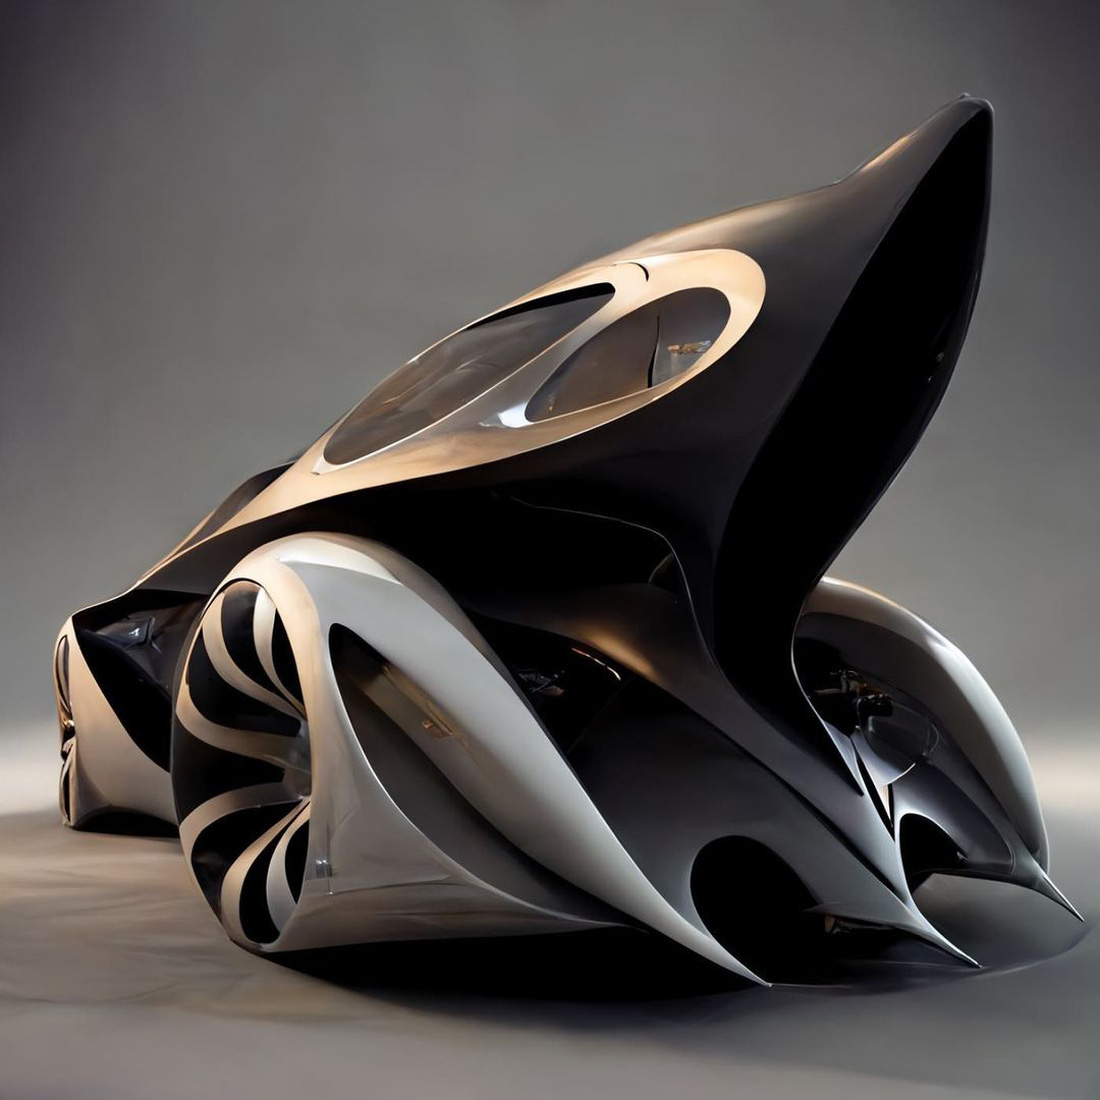 Chùm ảnh trí tuệ nhân tạo thiết kế ô tô mô phỏng các công trình kiến trúc độc đáo - Ảnh 7.